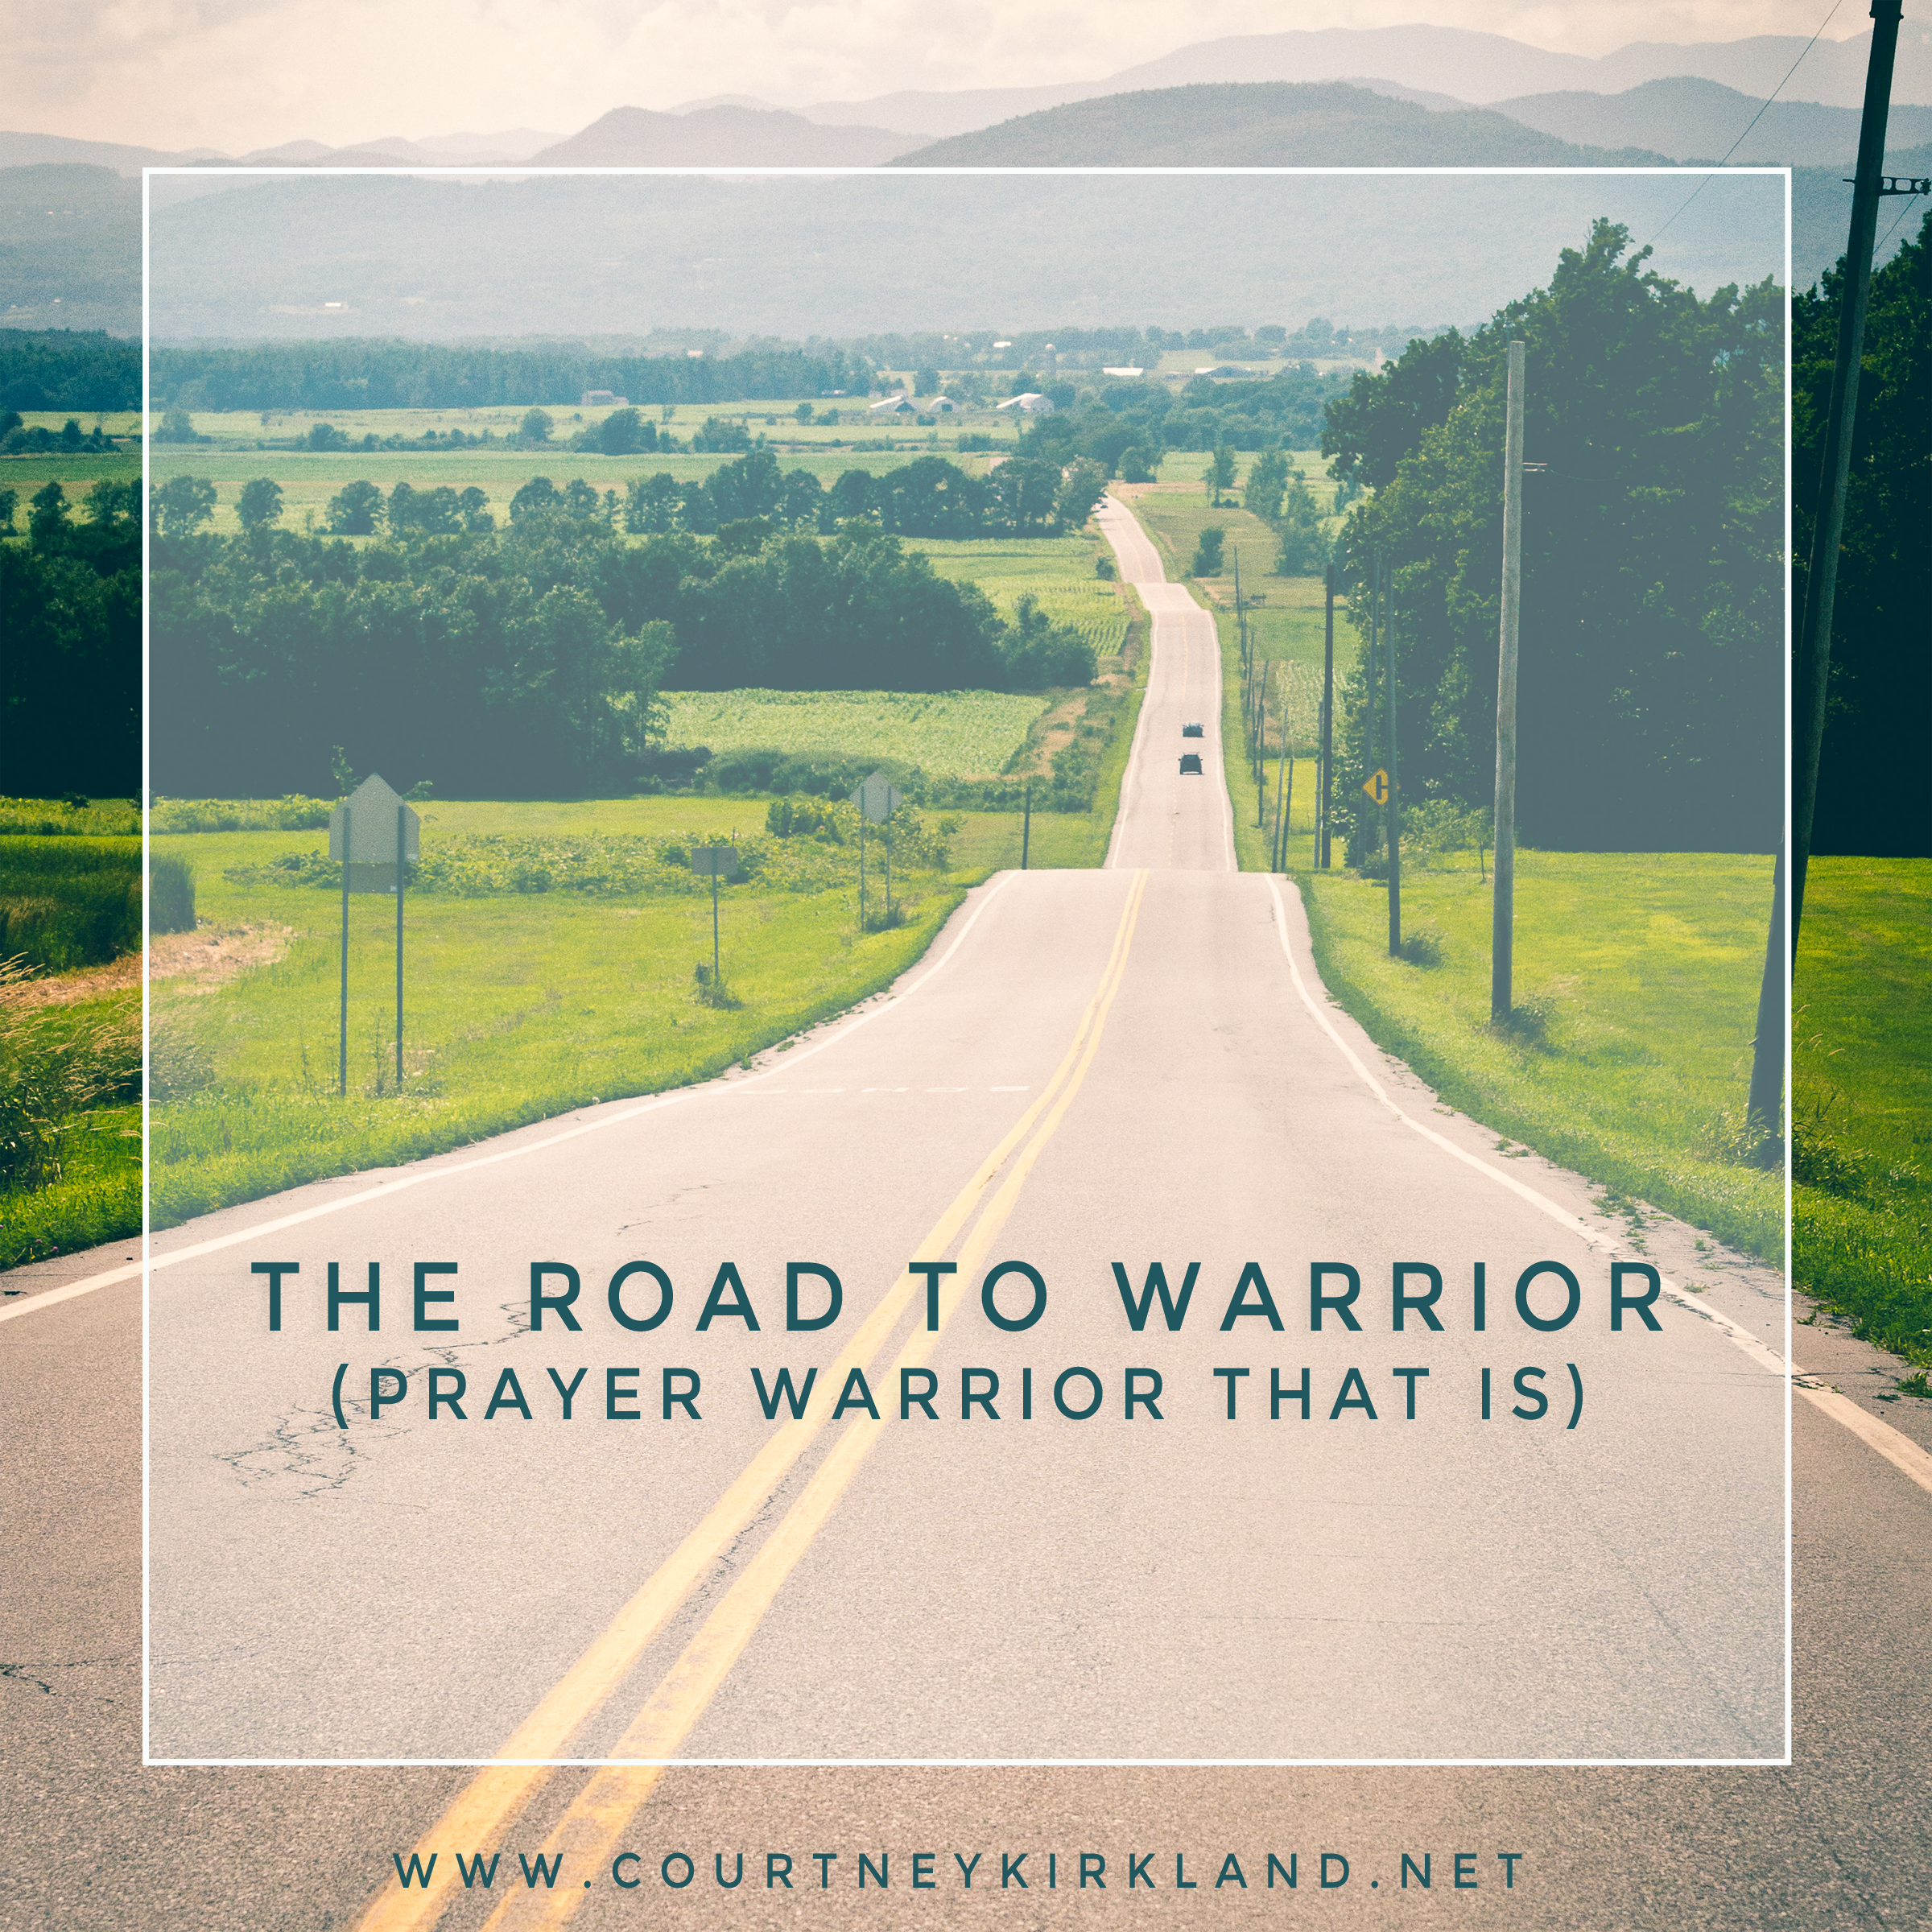 The Road to Warrior via @CourtneyKirklnd